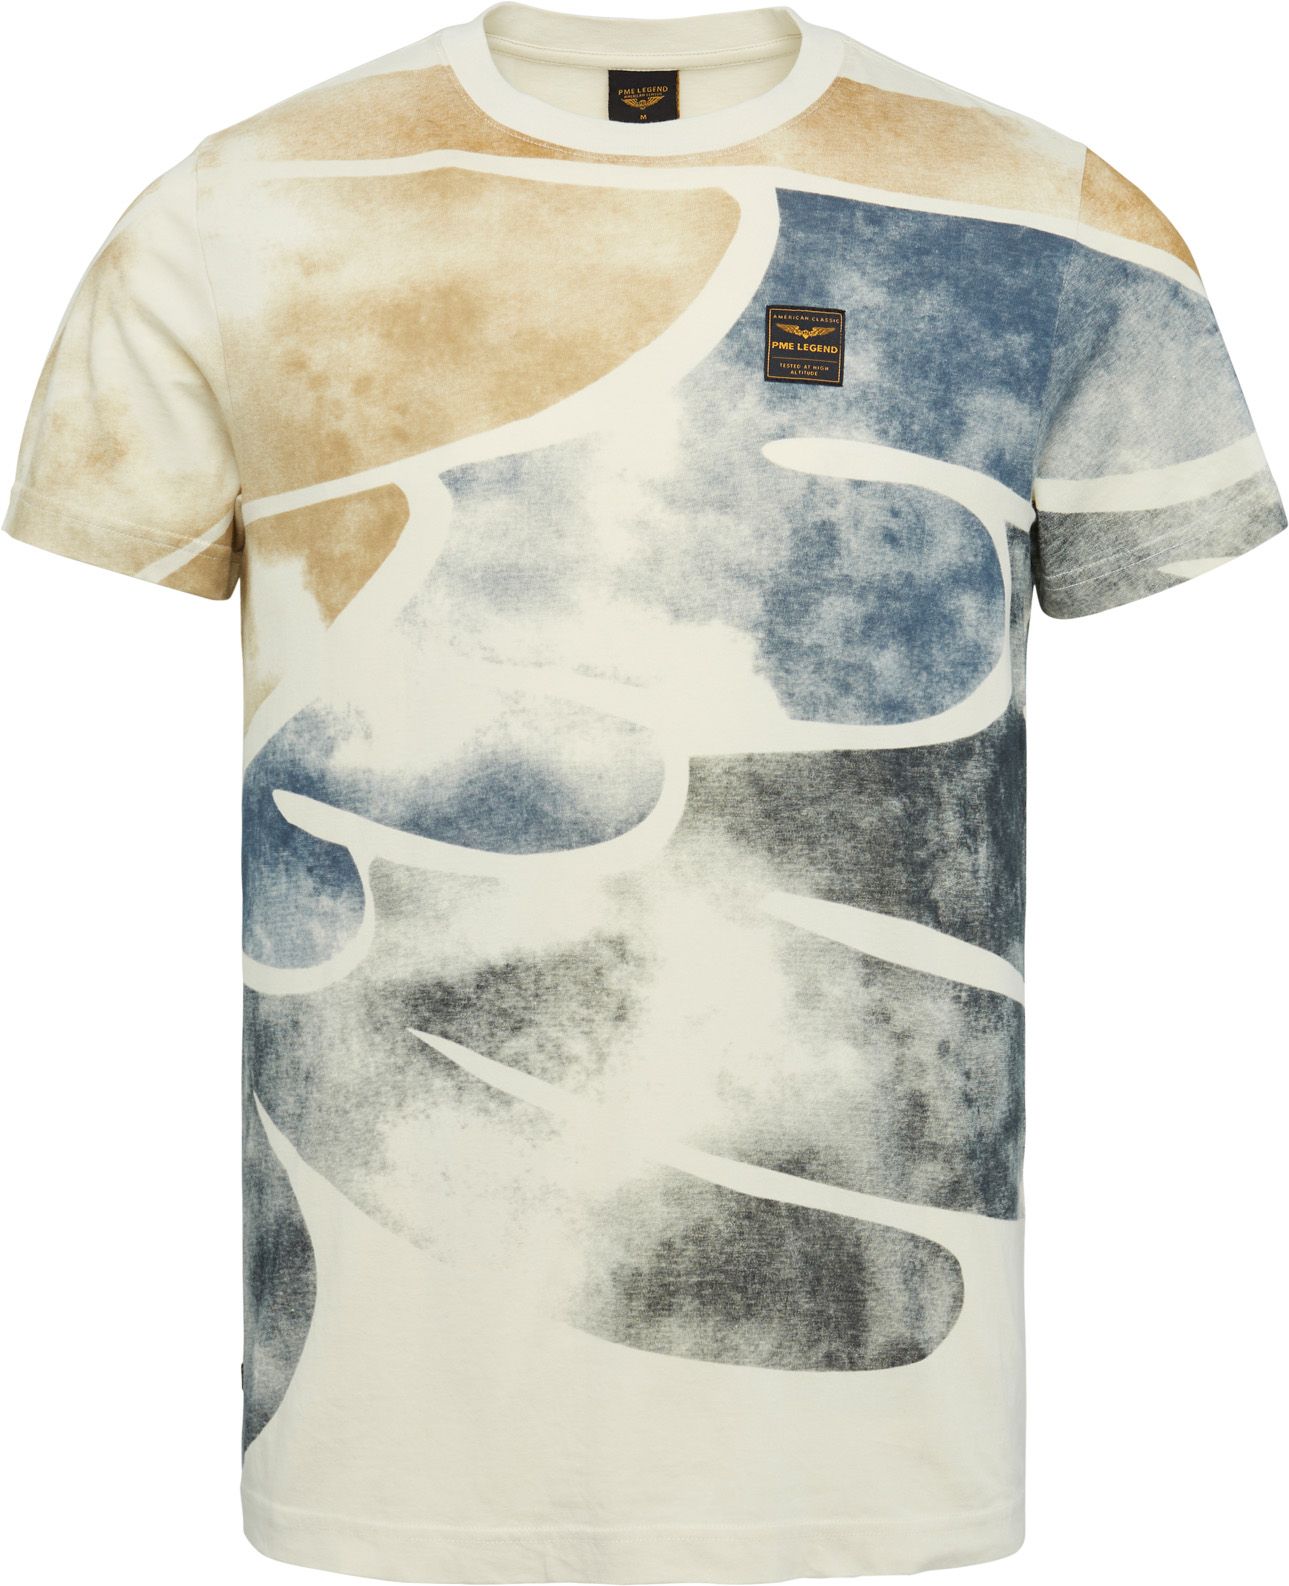 PME Legend T-Shirt Multicolour Beige size 3XL